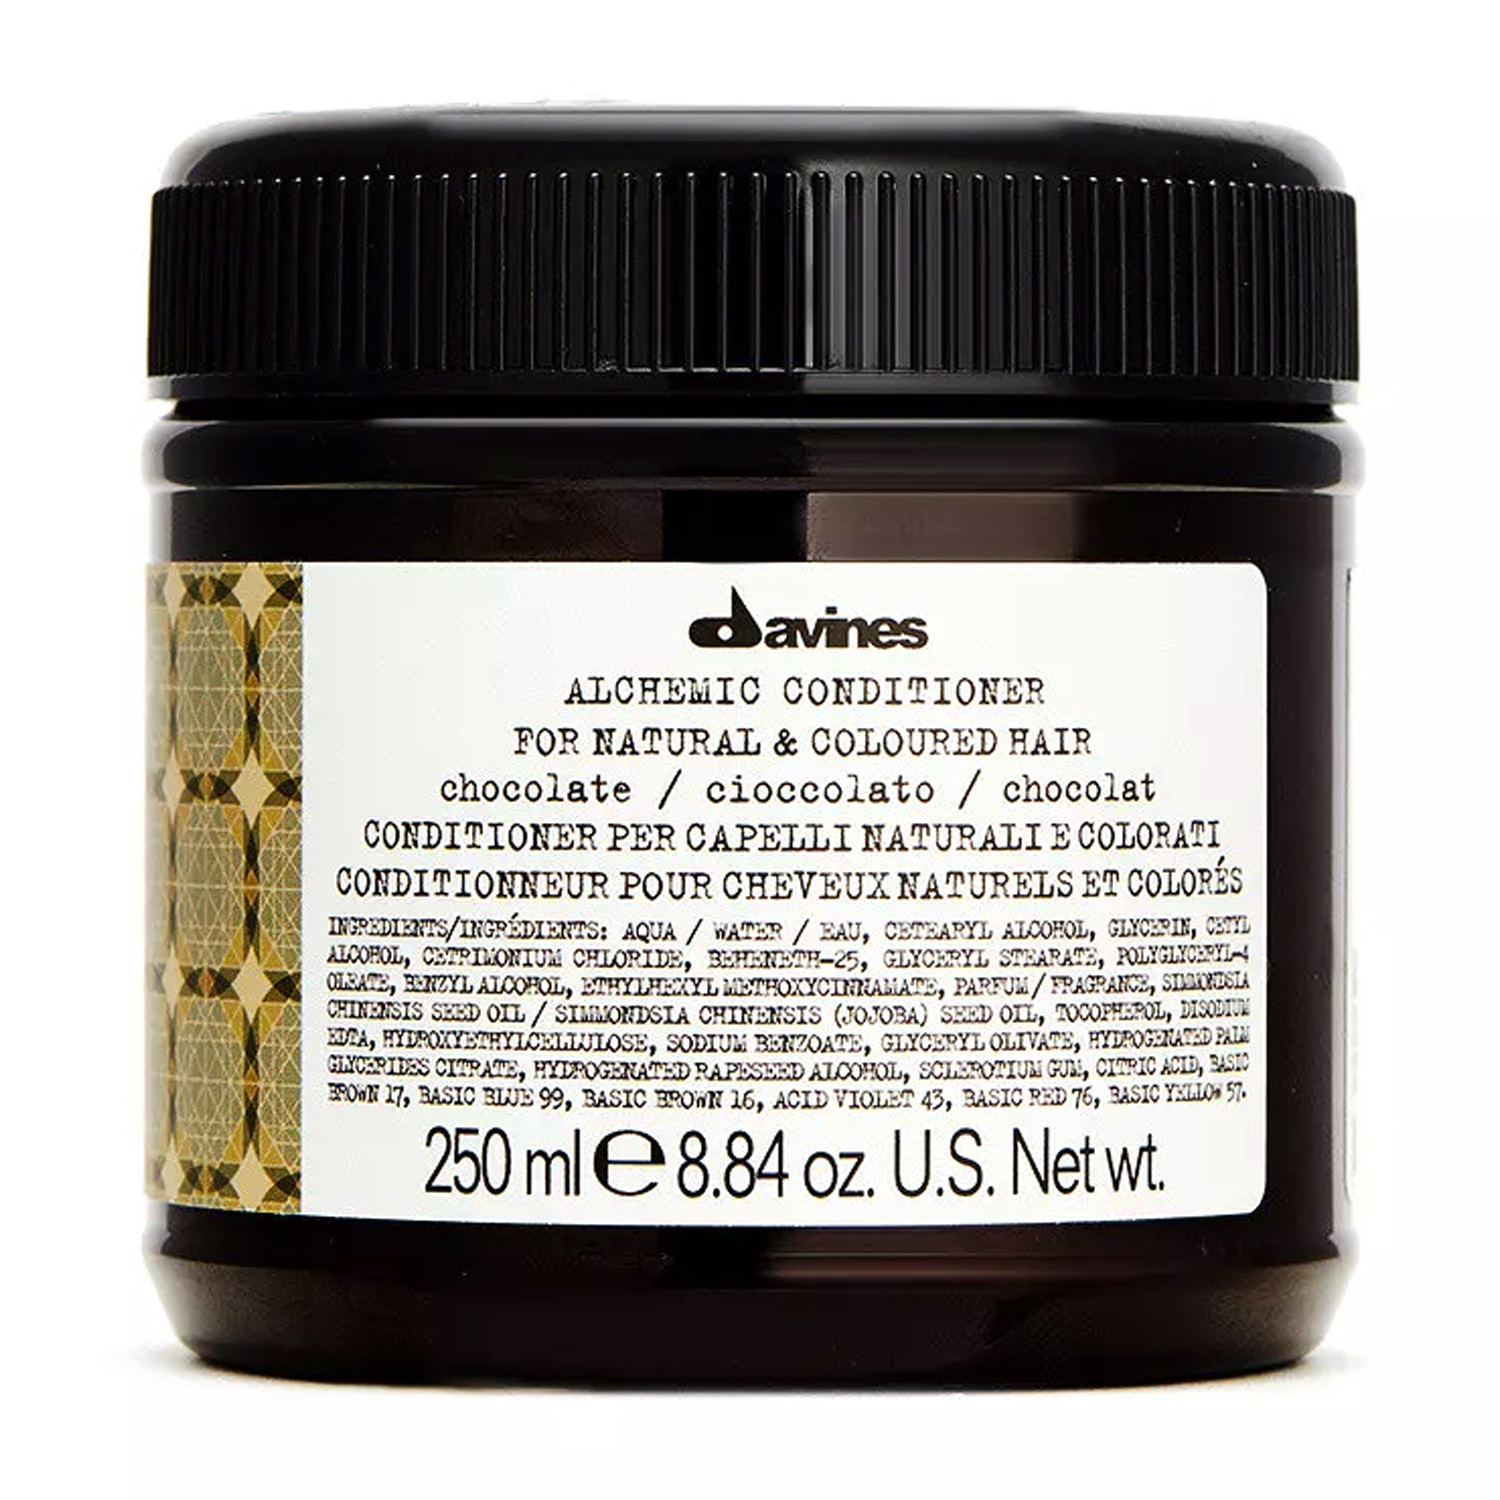 Відгуки про Davines Alchemic Conditioner Chocolate Оттеночный кондиционер для волос шоколадный